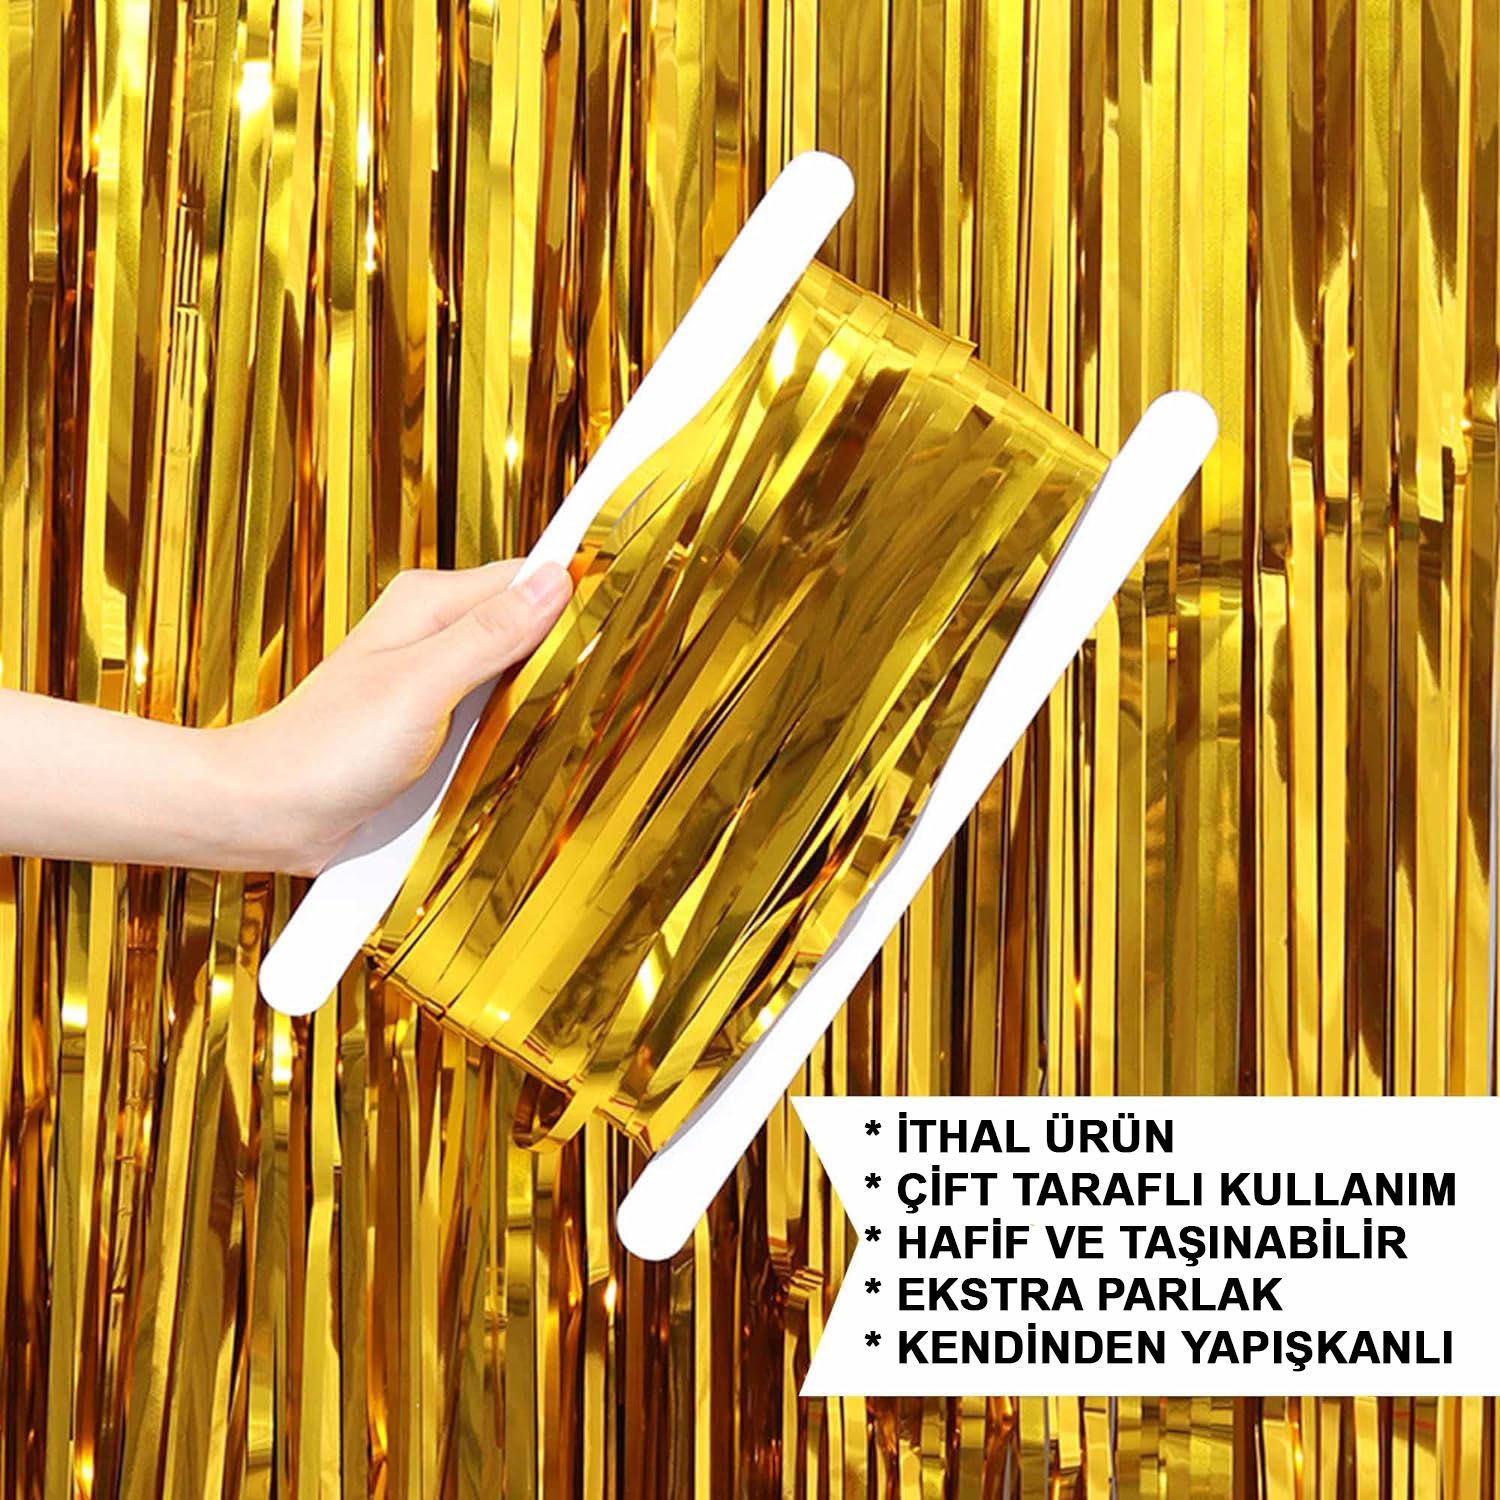 Altın Gold Renk Ekstra Metalize Parlak Saçaklı Arka Fon Perde İthal A Kalite 1x2 Metre (CLZ)